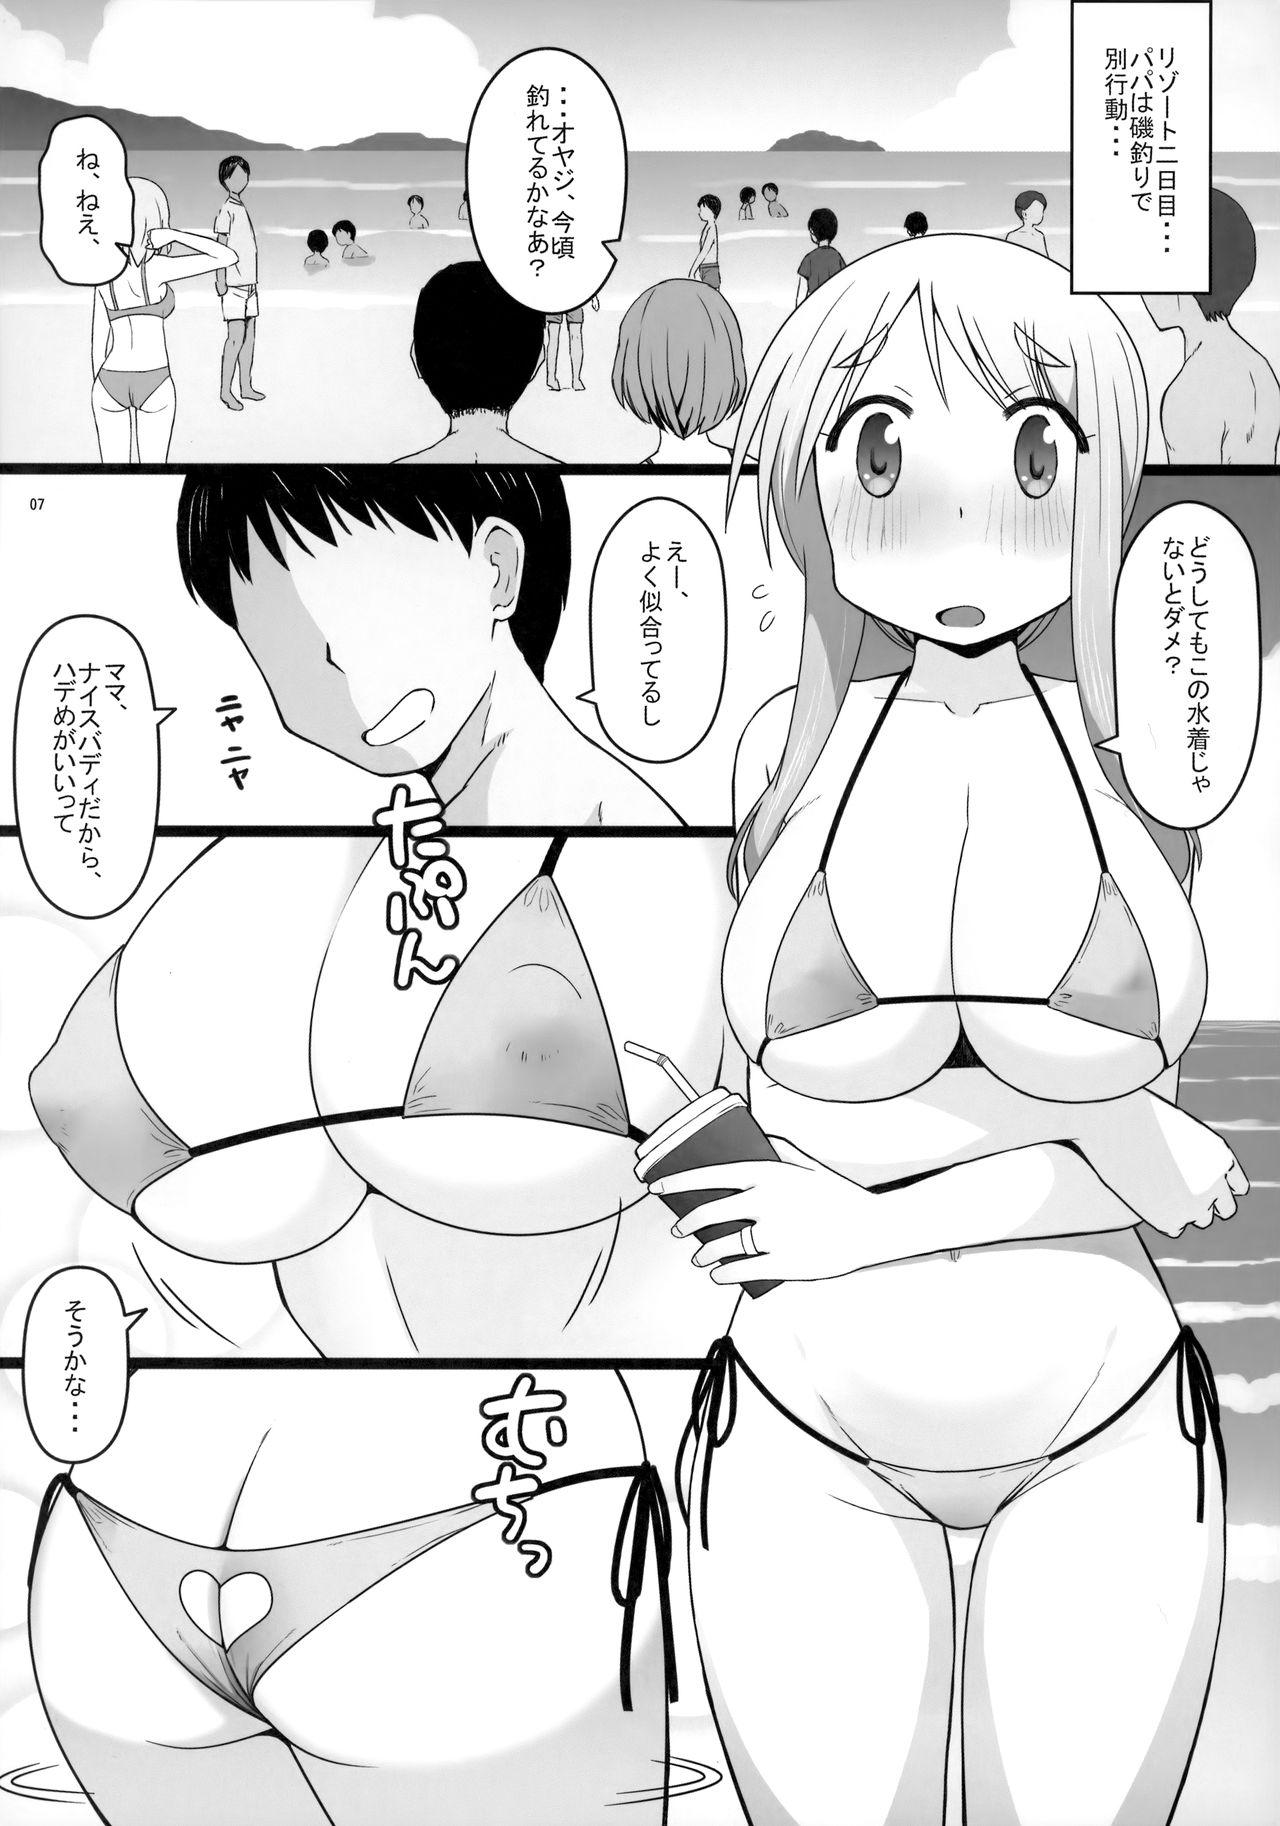 Hooker Angel's stroke 129 DSY2 bakku daisuki! Giri no musuko to beddo ni shizumu gosai haha Yoriko-chan! ! - Yuyushiki Newbie - Page 8